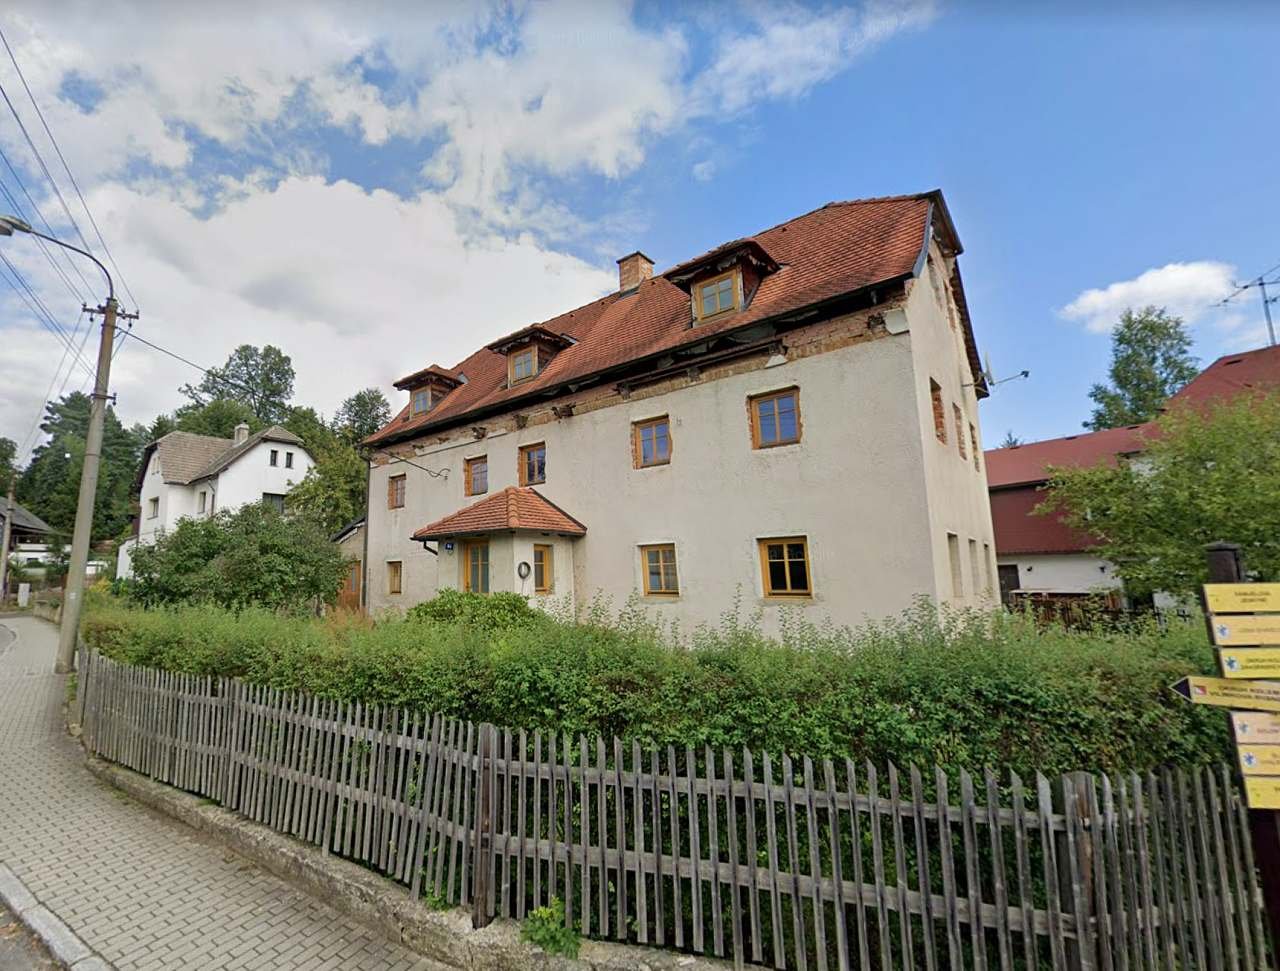 Ubytování Sloup v Čechách